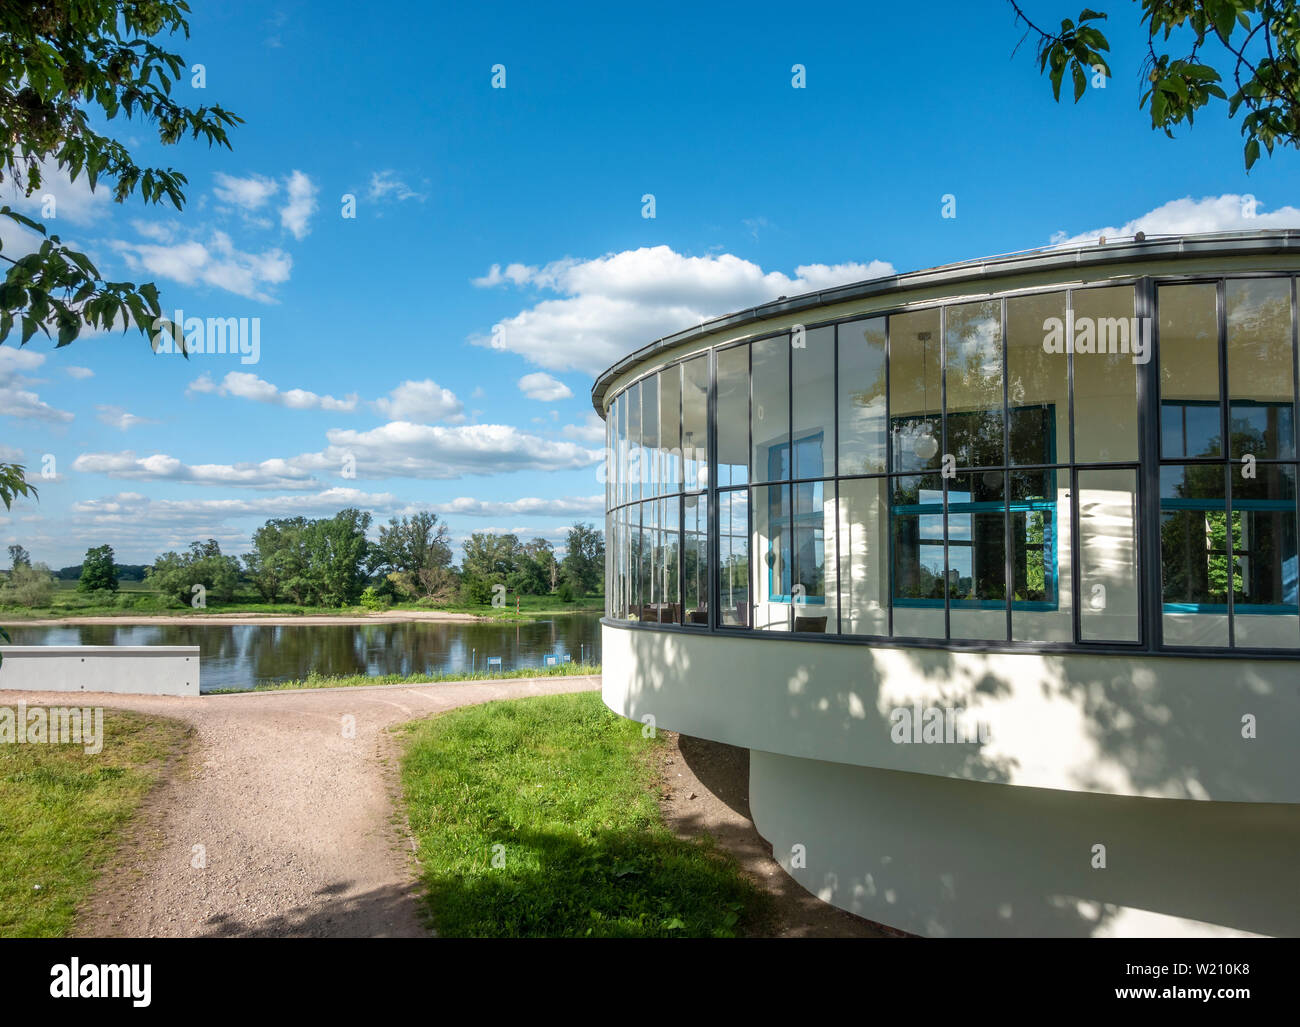 Kornhaus ristorante sulle rive del fiume Elba a Dessau progettato nel 1929 dall'architetto Carl Fieger che era un insegnante al Bauhaus. Foto Stock